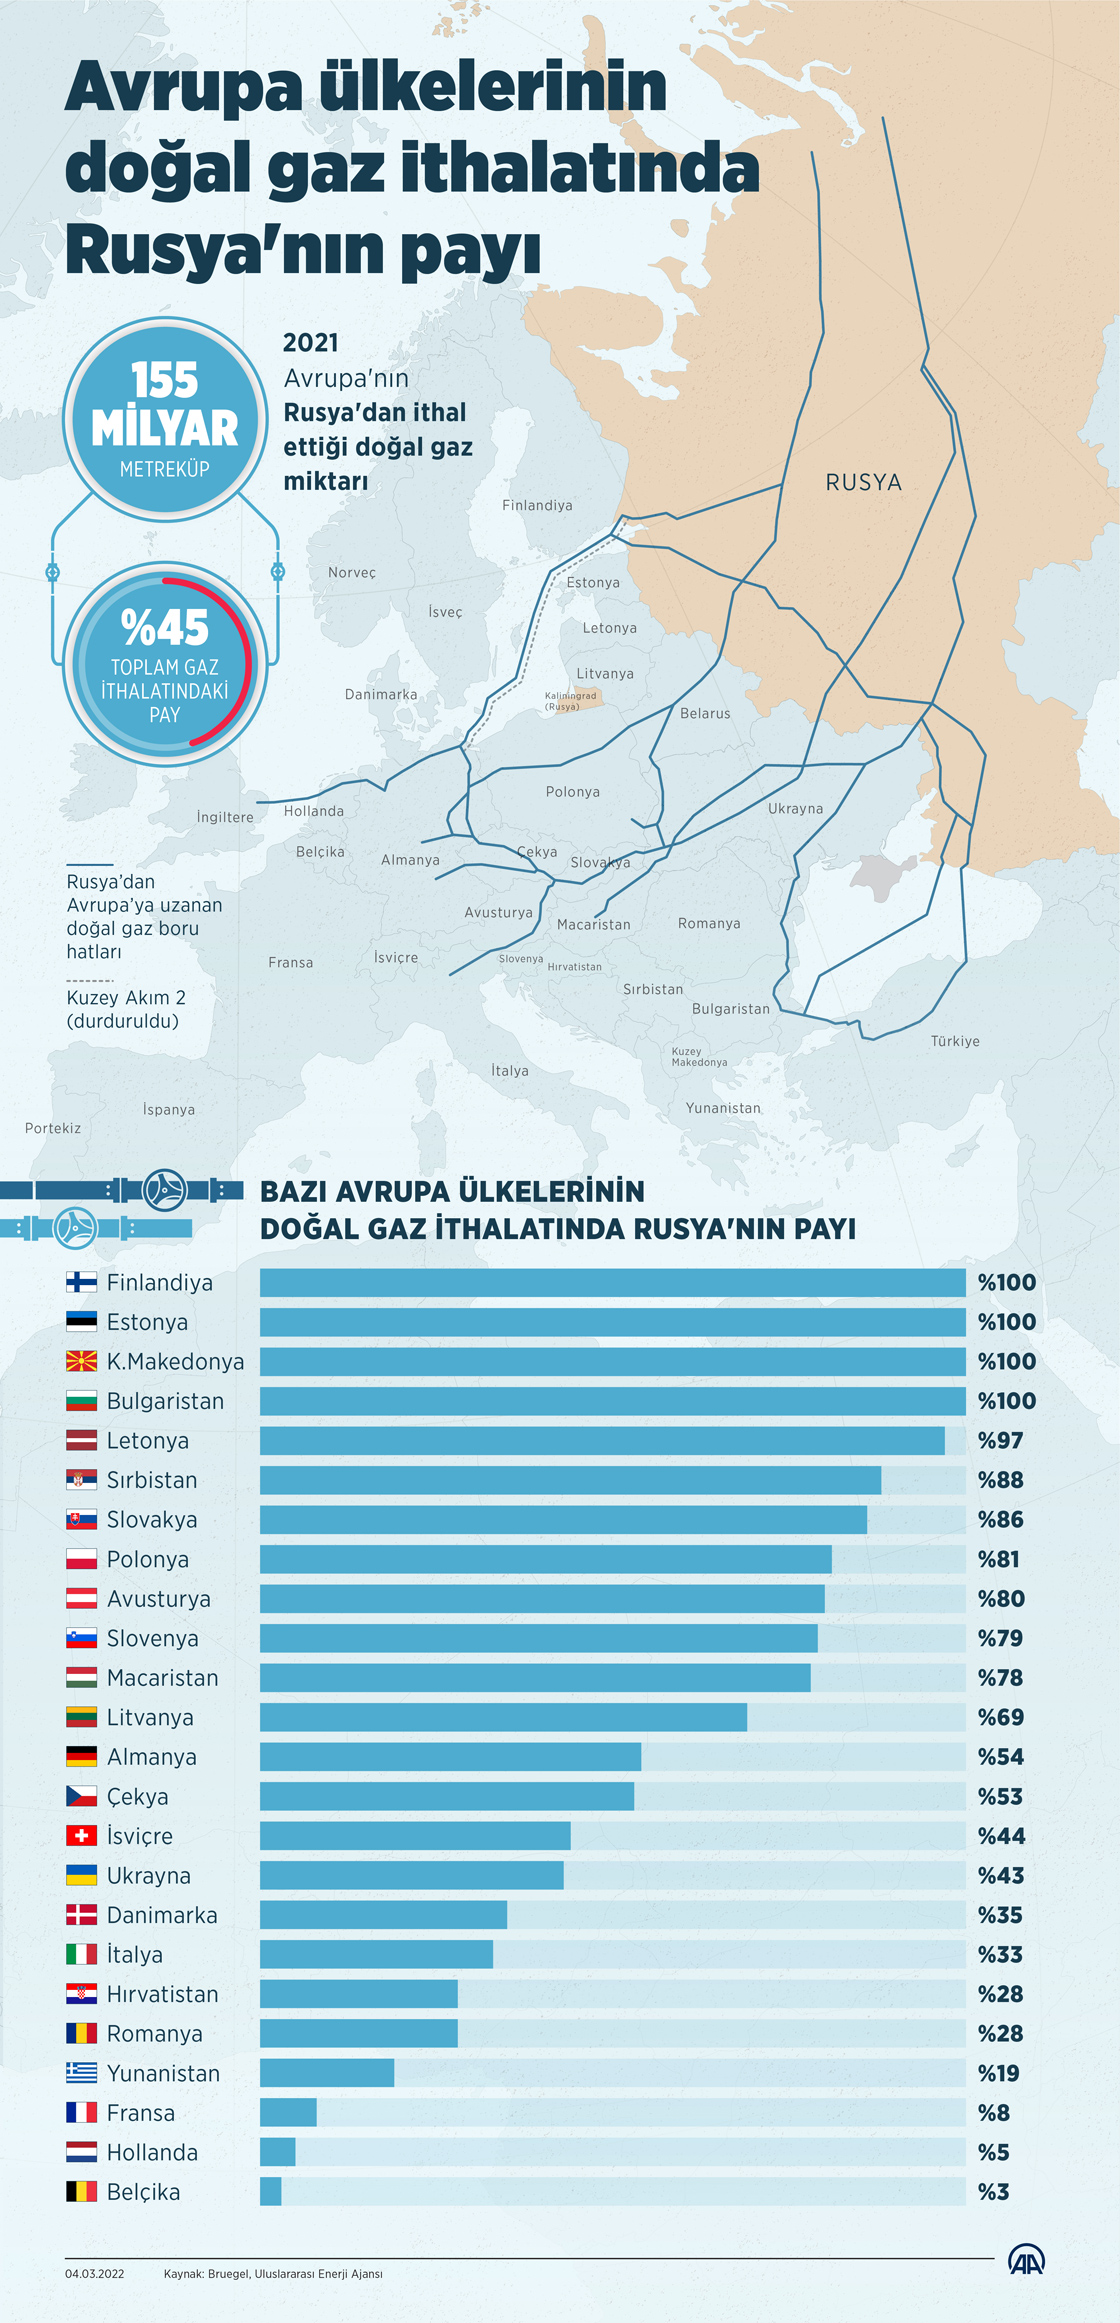 Avrupa ülkelerinin doğal gaz ithalatında Rusya'nın payı